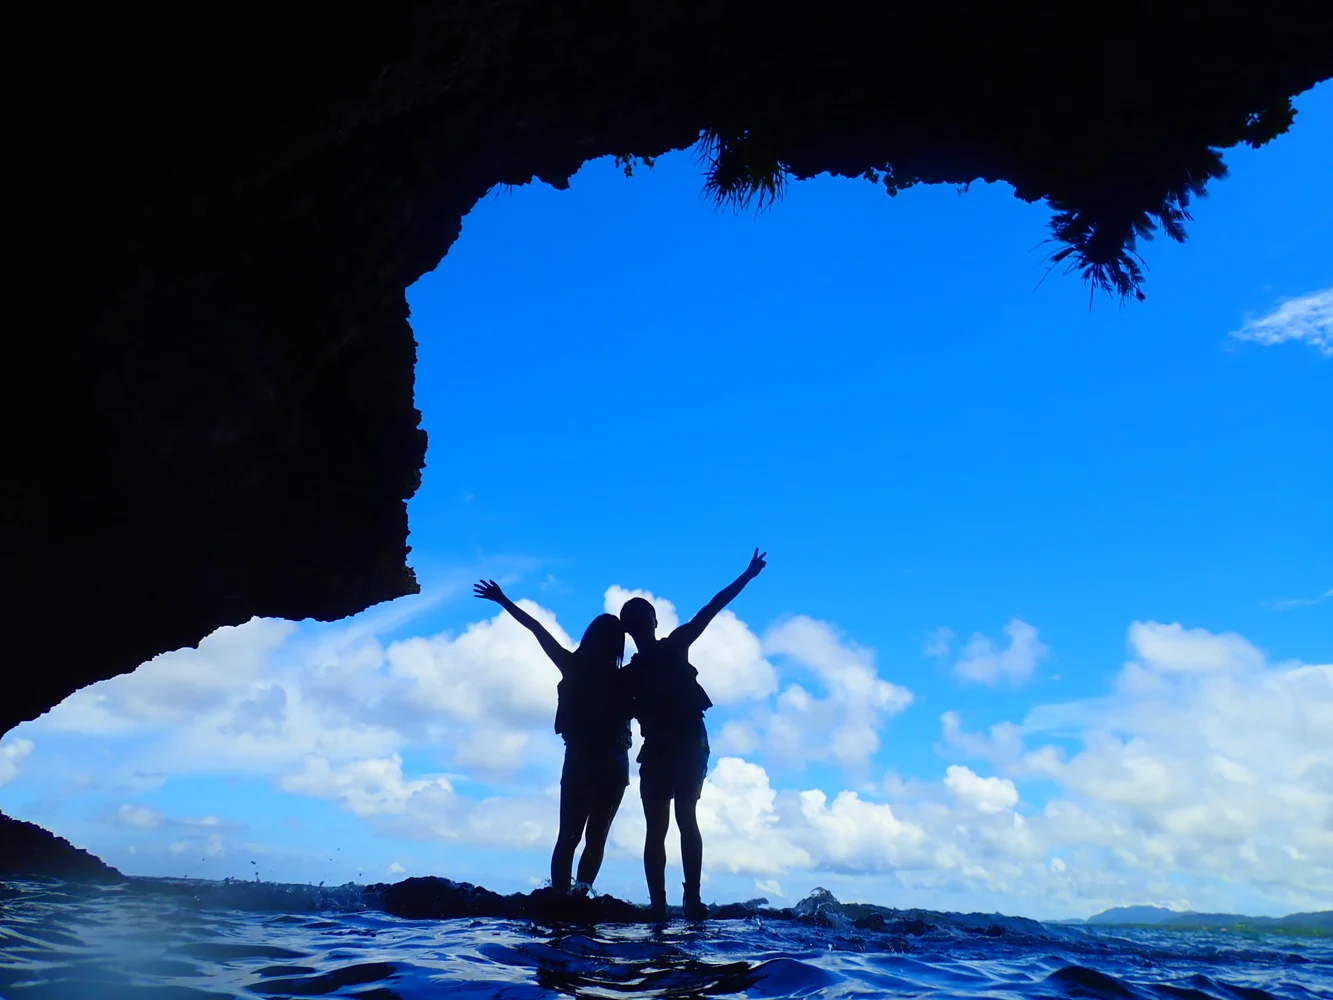 Ishigaki Blue Cave Snorkeling & Kabira Bay SUP (or Canoeing)